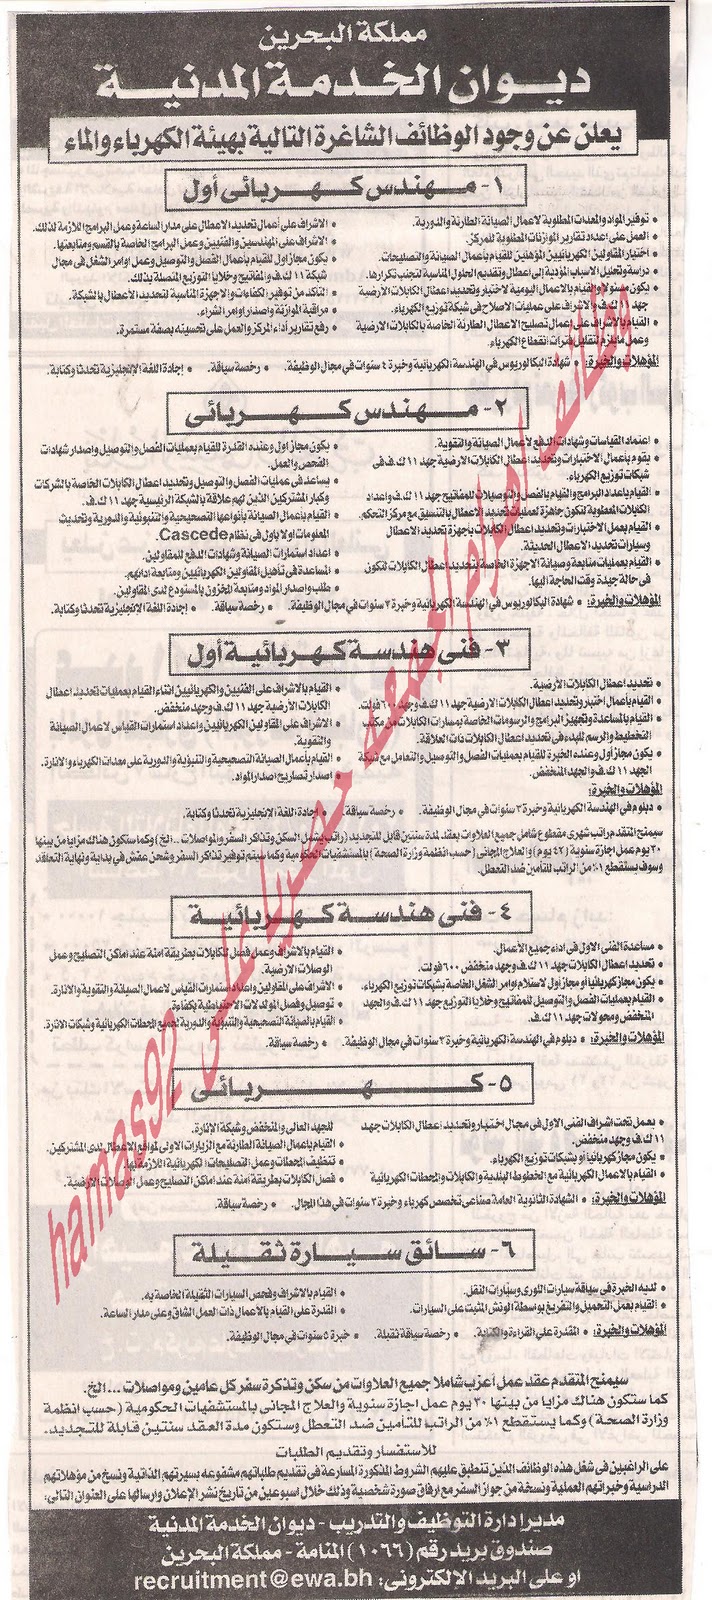 وظائف خاليه من جريده الاهرام الجمعه 30\9\2011 , الجزء الثالث  Picture+018